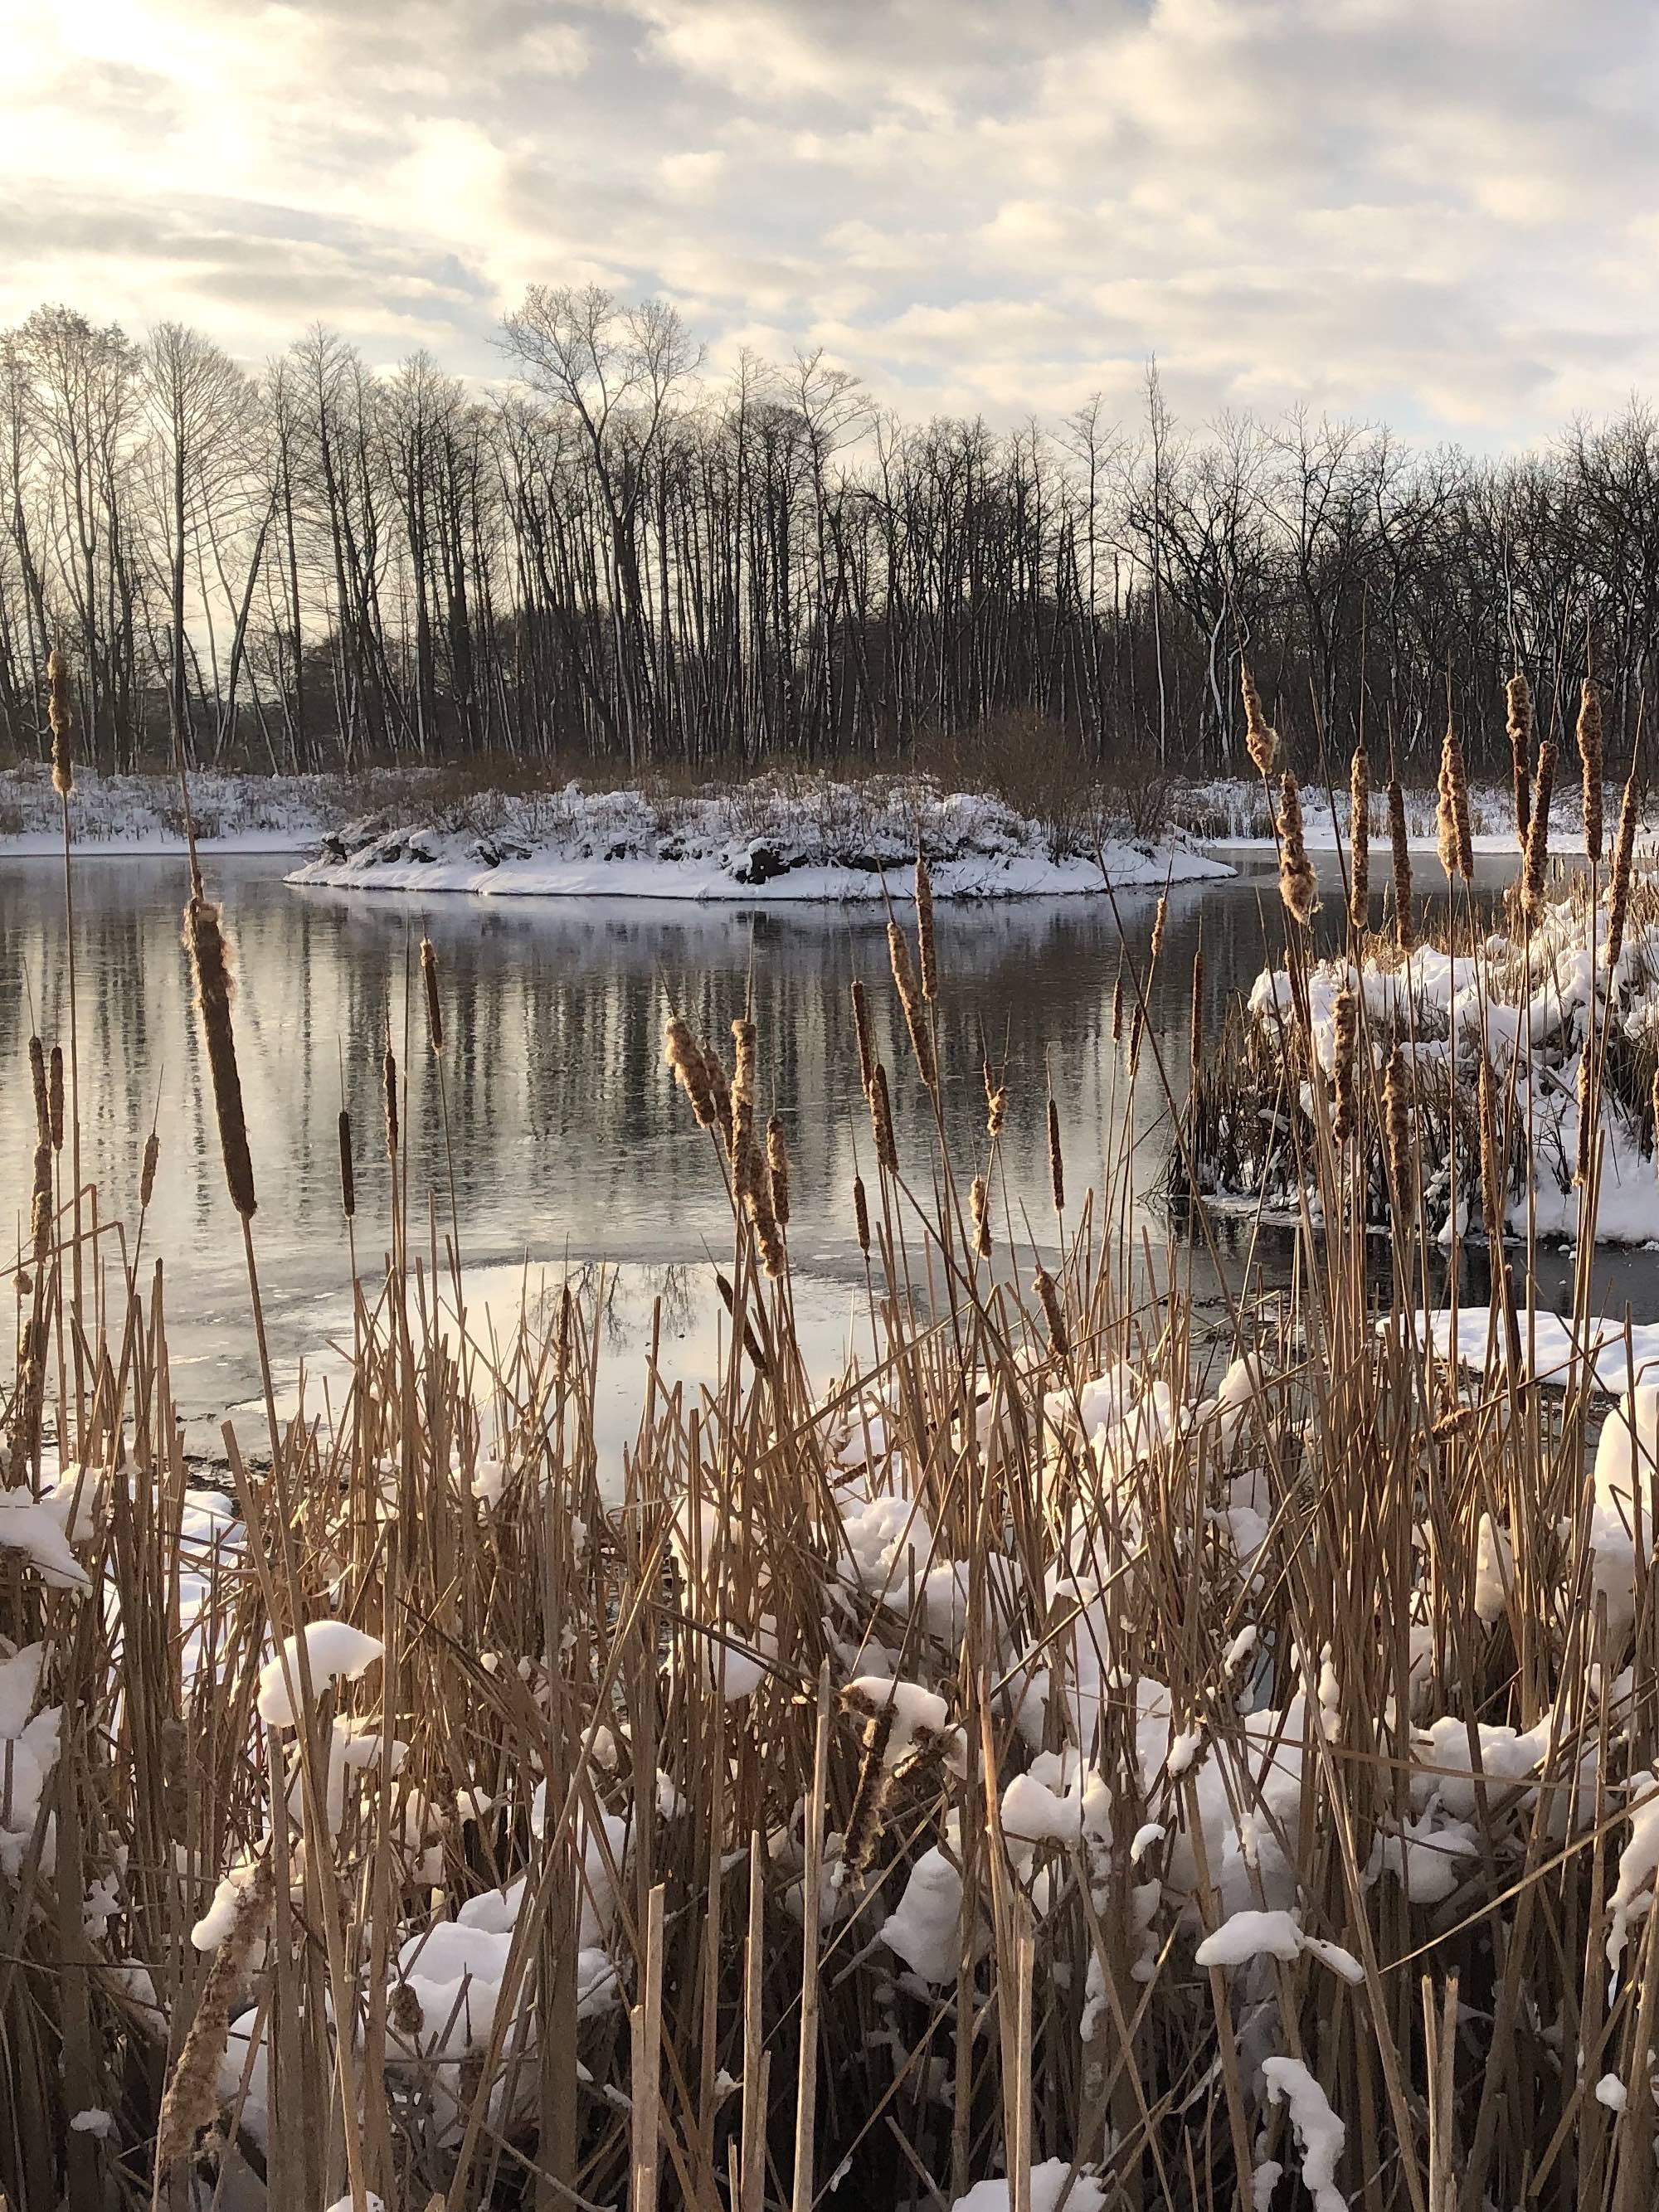 Cattails along shore of Marion Dunn Pond on December 16, 2020.